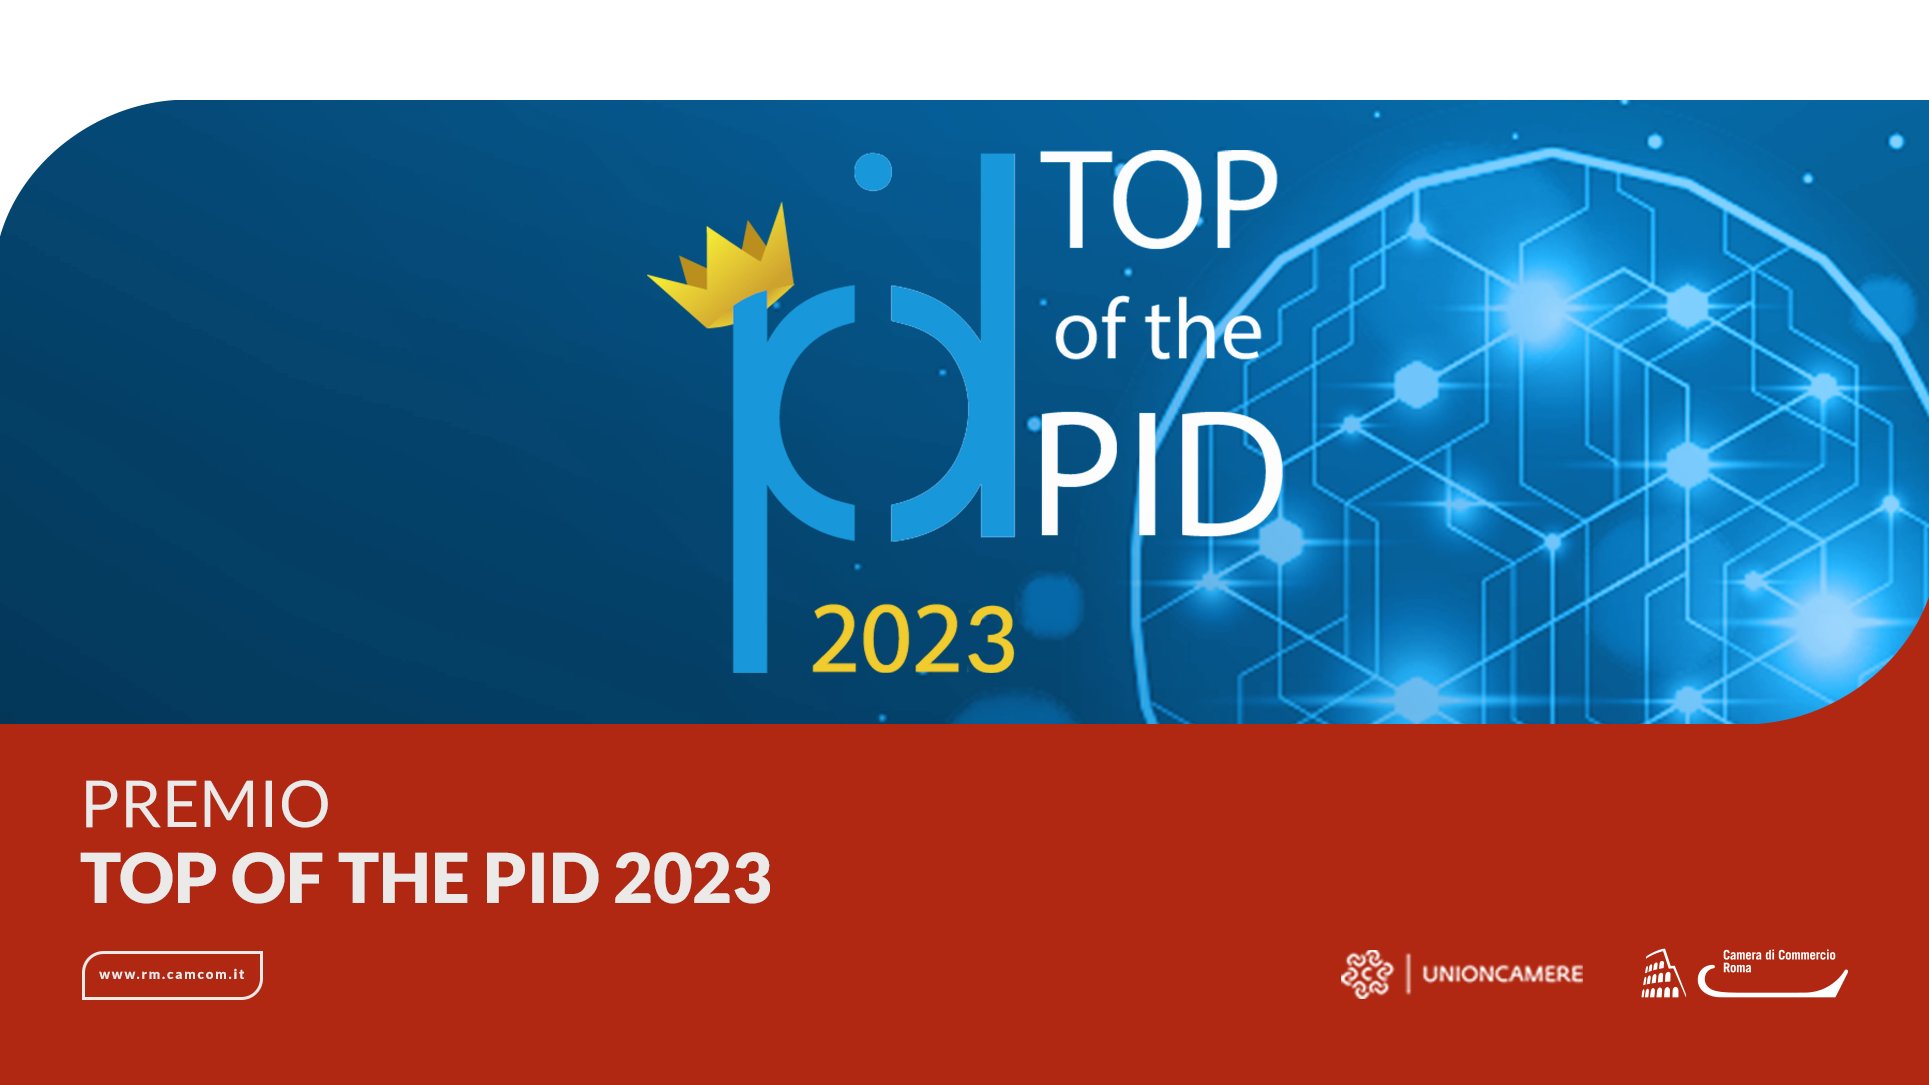 Torna Top of the PID 2023, candidature aperte fino al 4 settembre